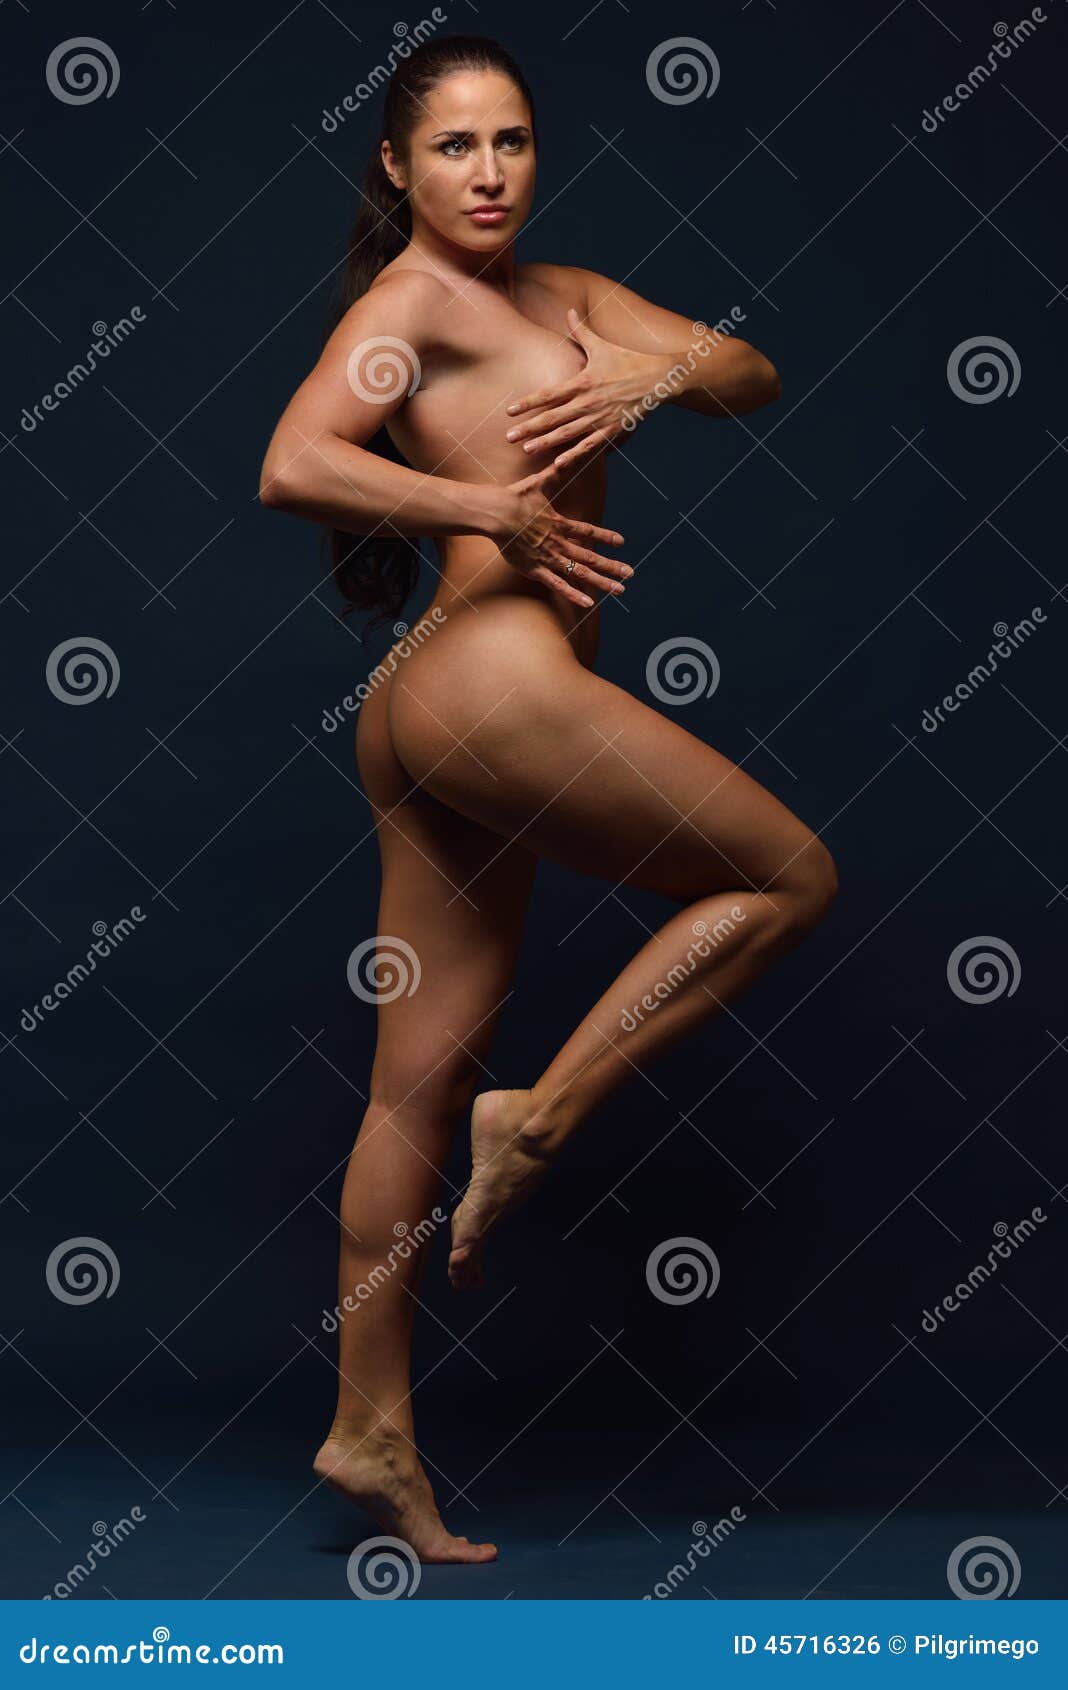 Beautiful Nude Sports Woman. Stock Photo - Image of idyllic, woman